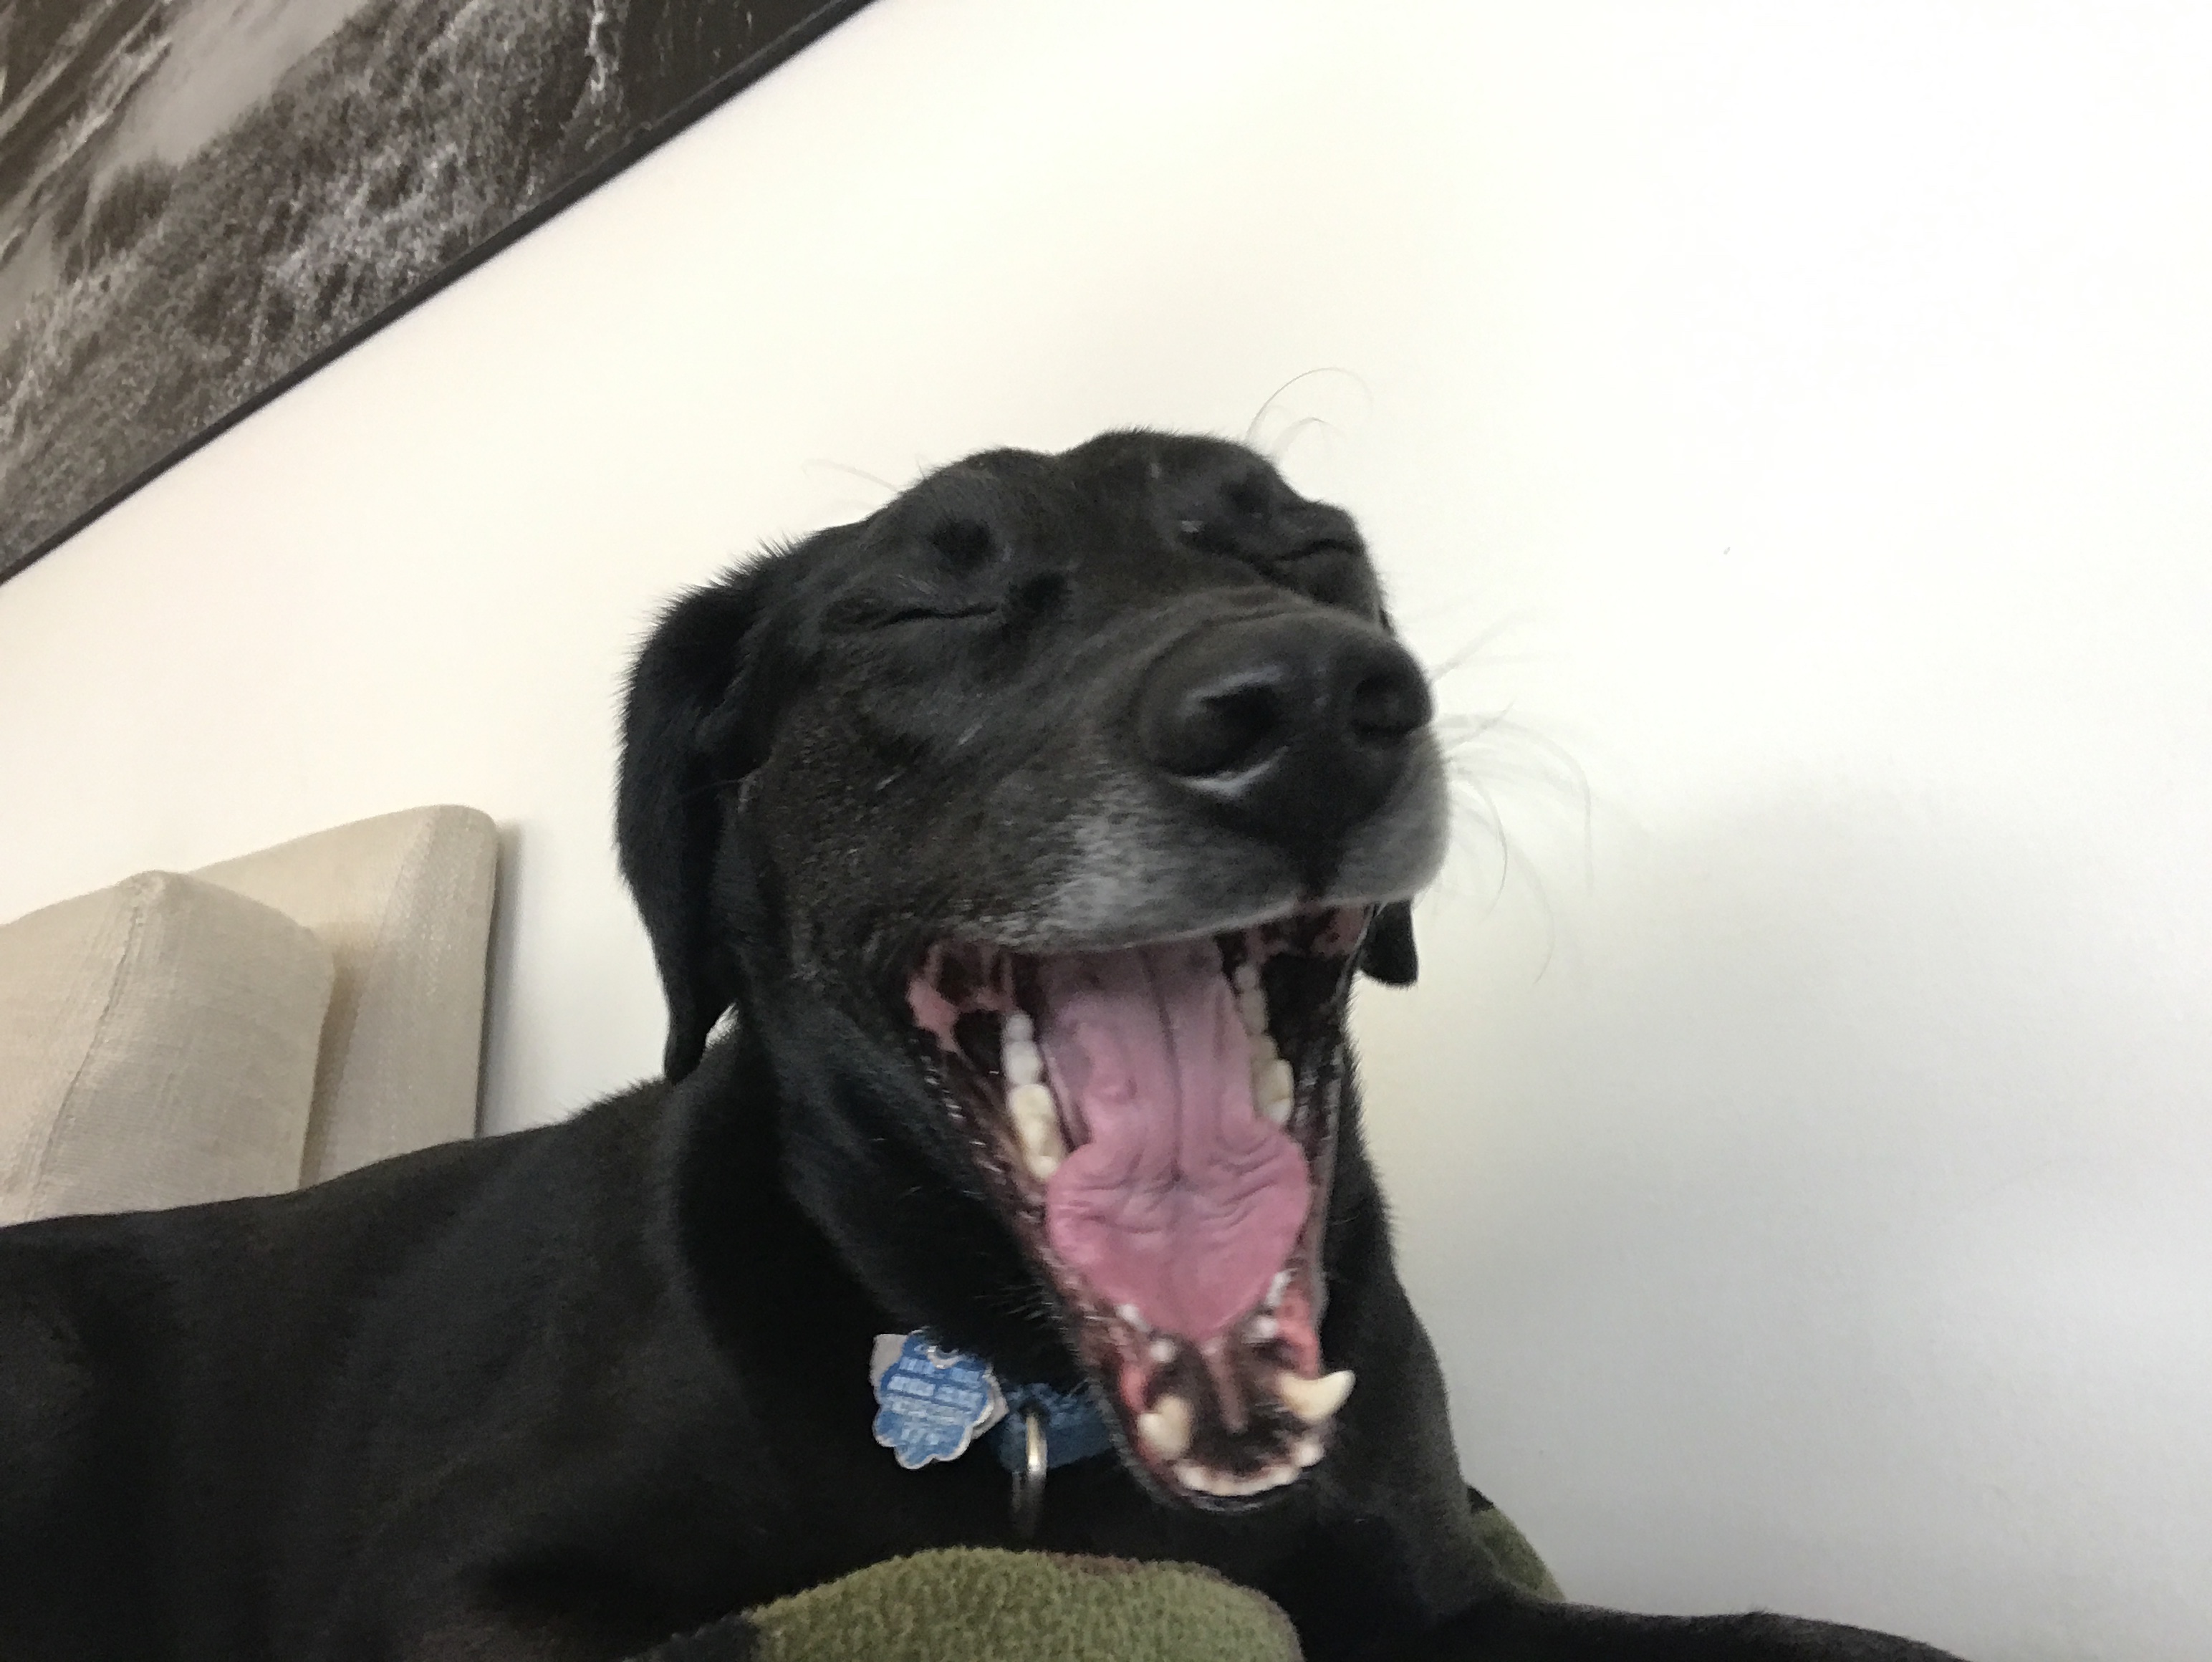 Buddy yawning